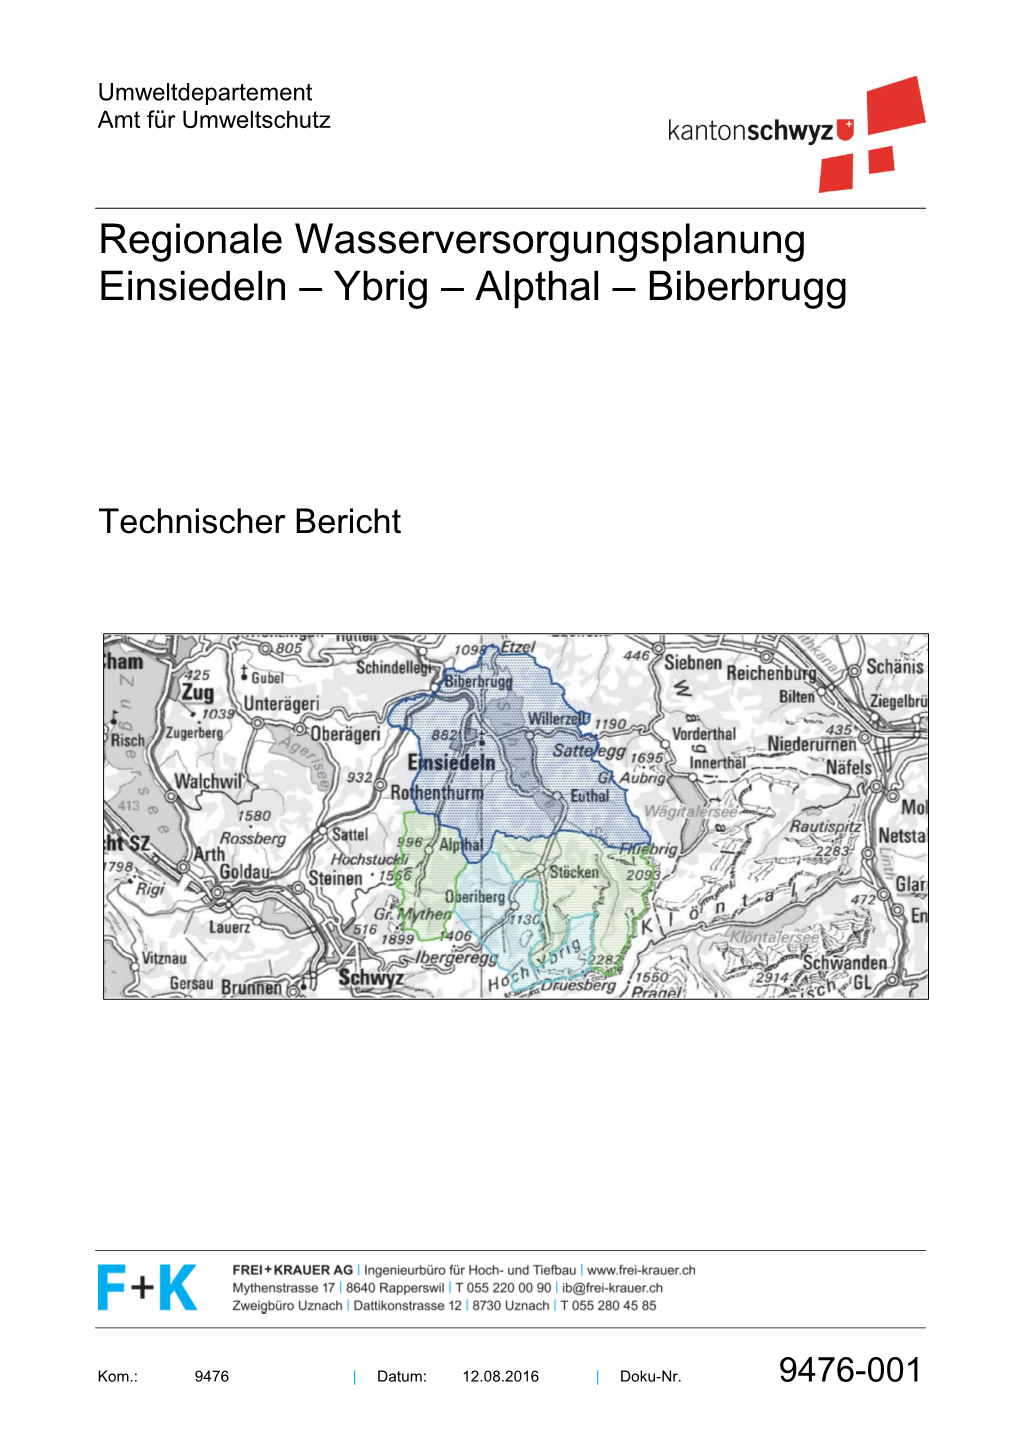 Technischer Bericht Einsiedeln Ybrig Alpthal Biberbrugg